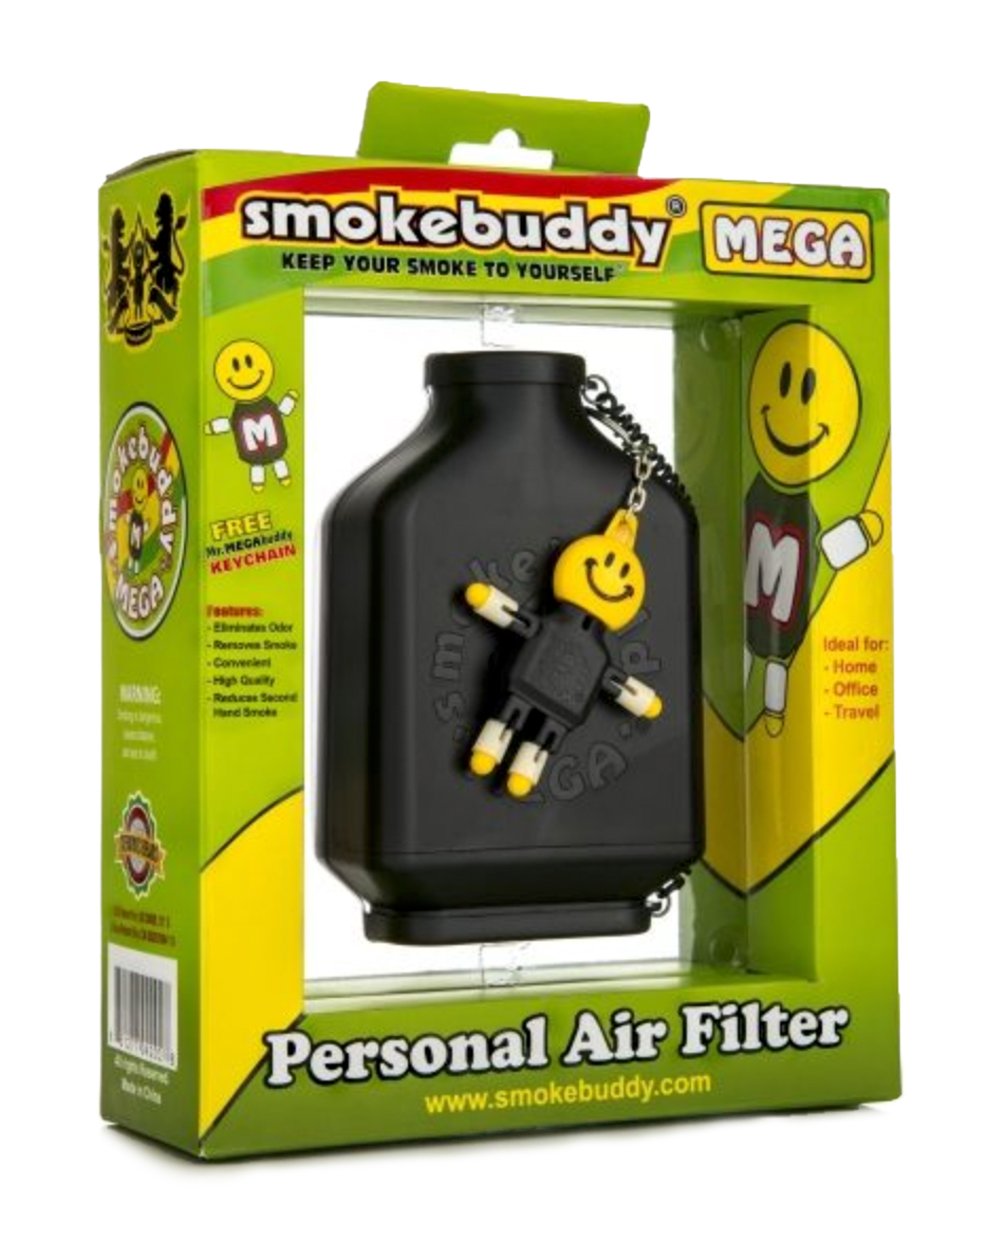 SMOKE BUDDY | Mega Personal Air Filter | Reduce Secondhand Smoking - 2